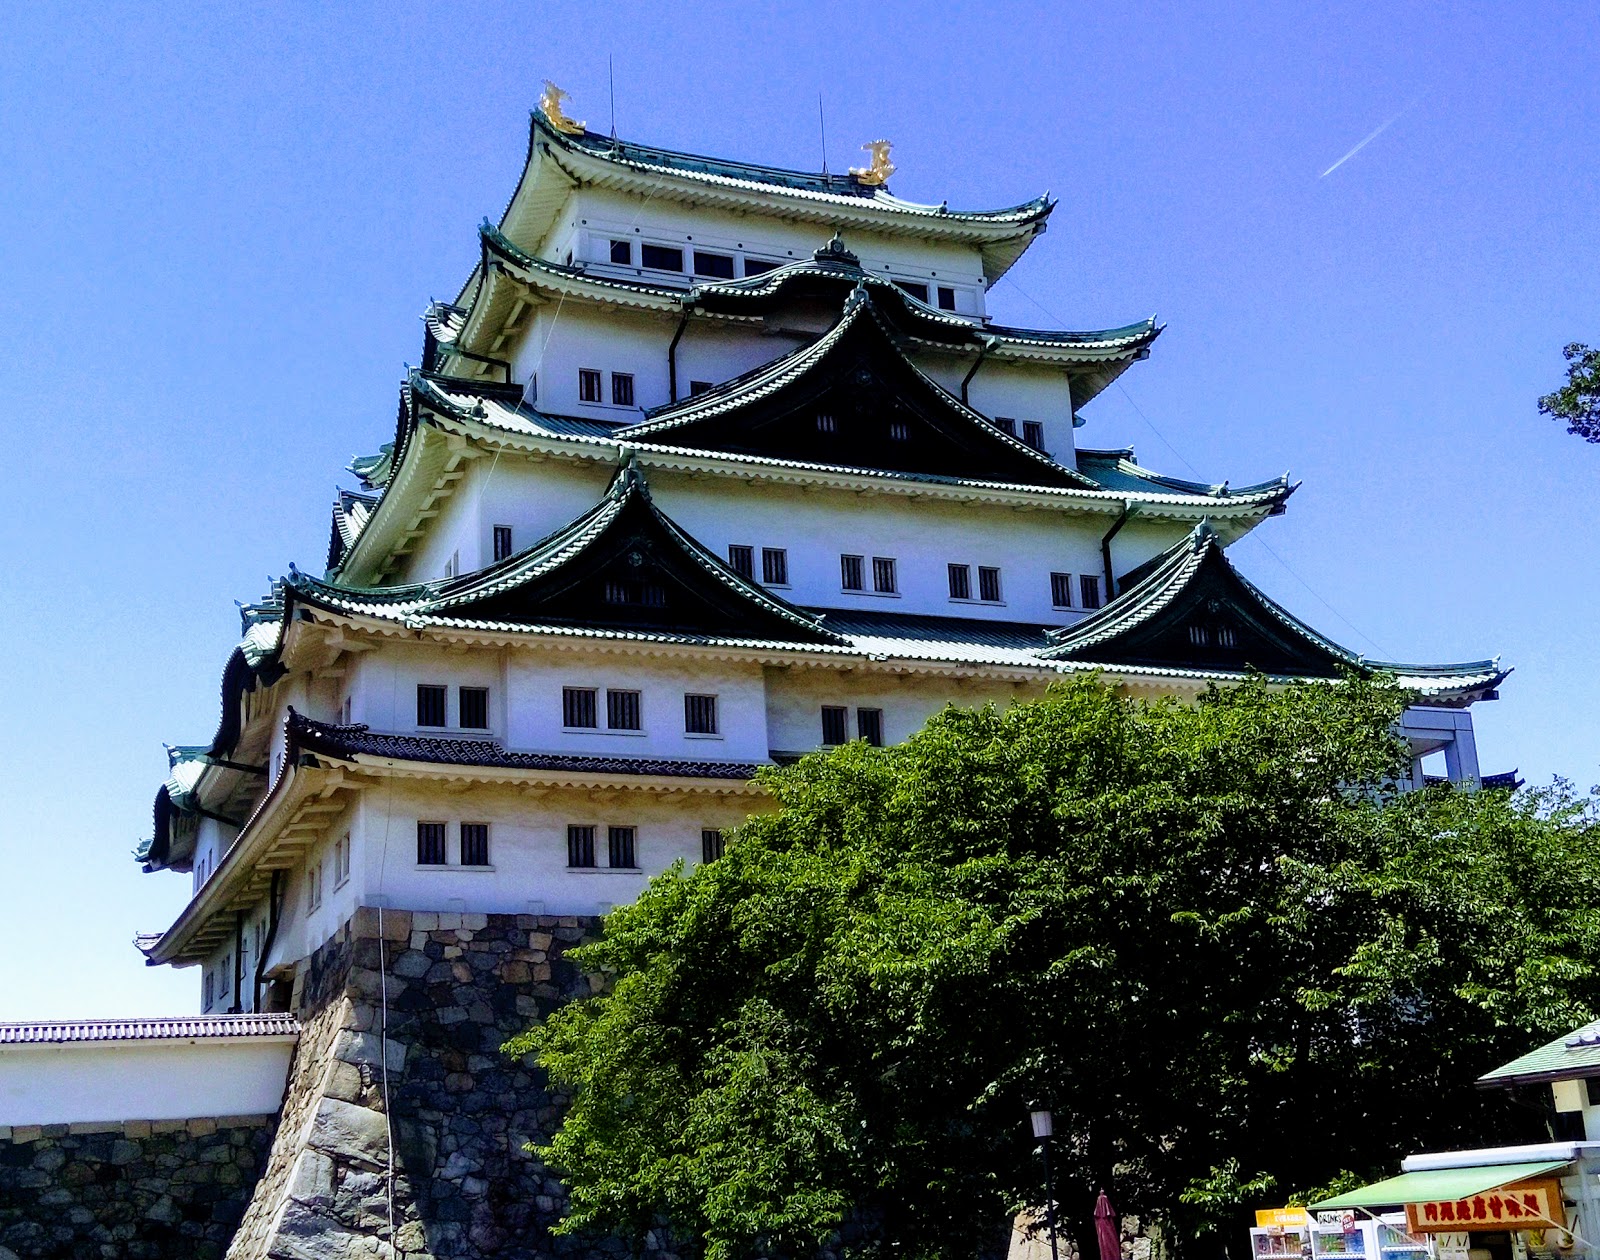 【名古屋】天守閣工事中の名古屋城観光（本丸御殿や金シャチ横丁など）|Yutaka's blog